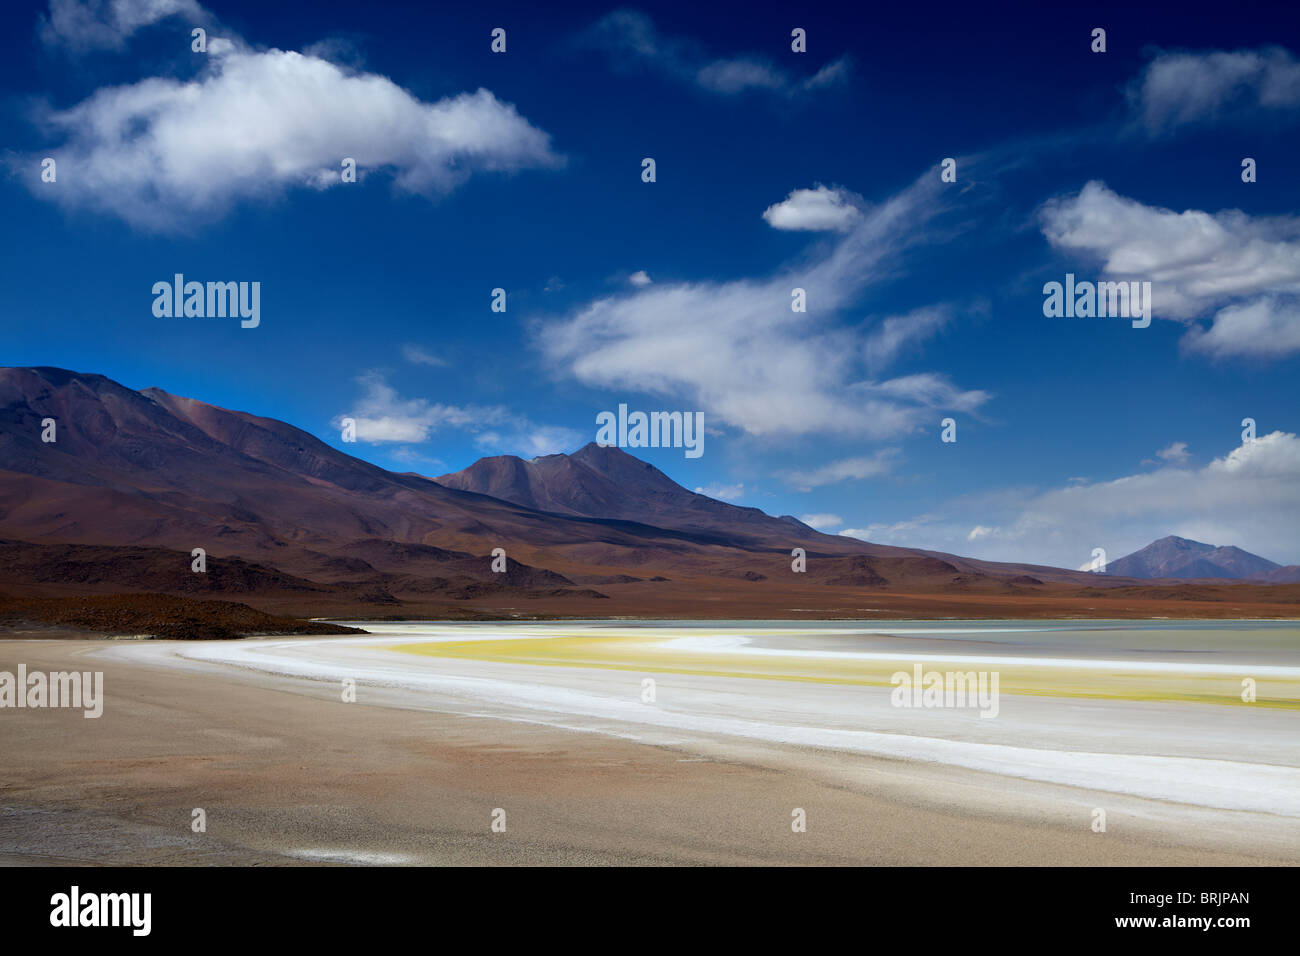 La remota regione del high desert, altiplano e vulcani vicino Tapaquilcha, Bolivia Foto Stock